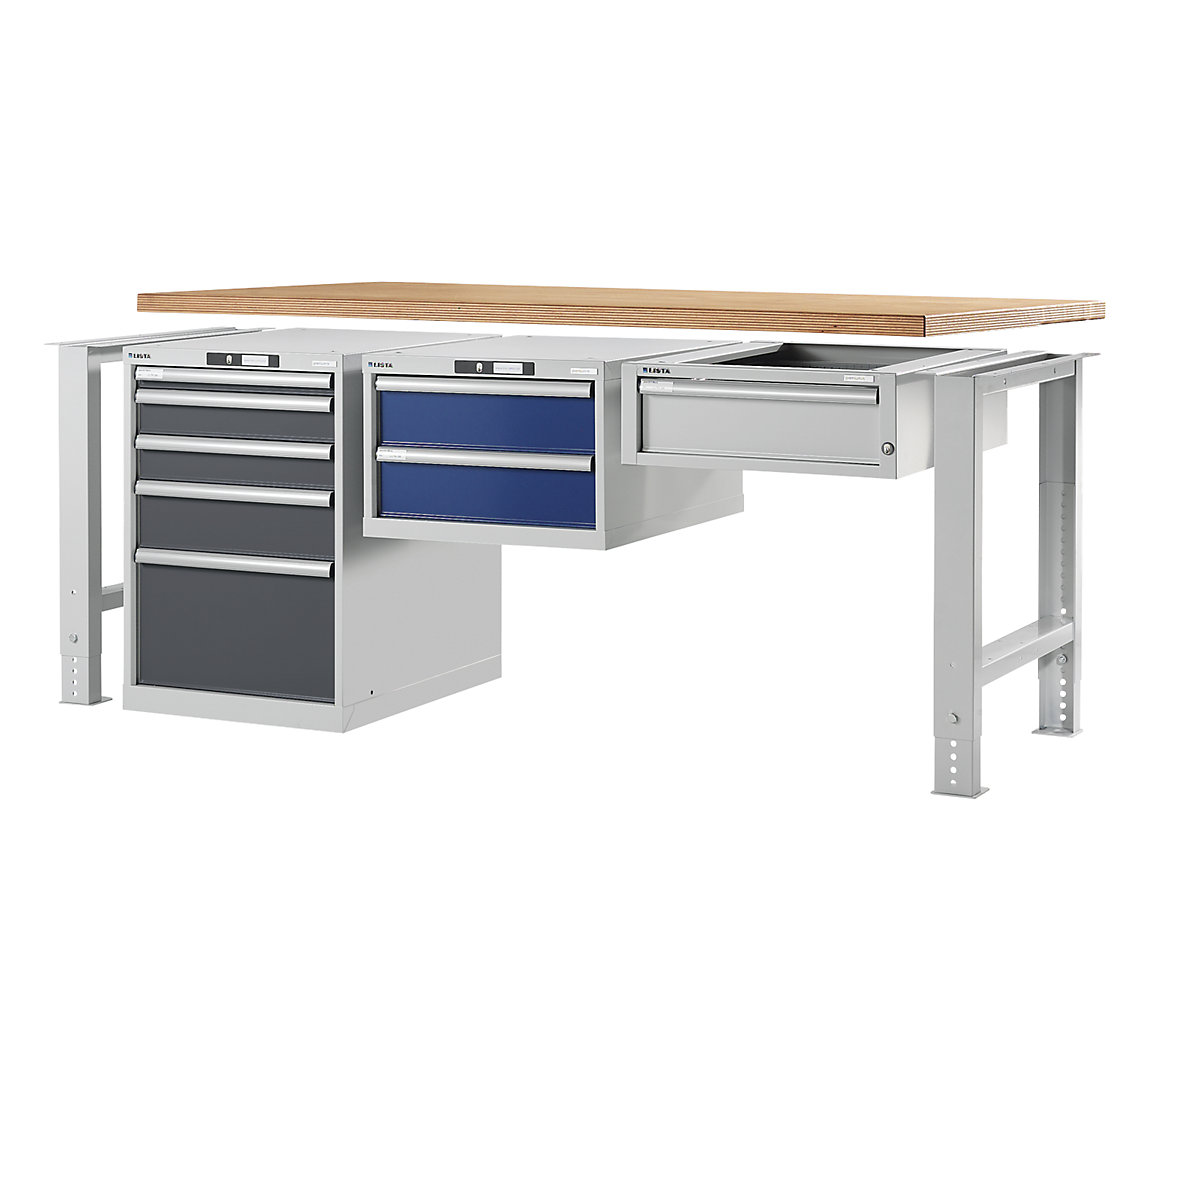 LISTA – Stavebnicový systém pracovného stola, podstavcová skriňa (Zobrazenie produktu 7)